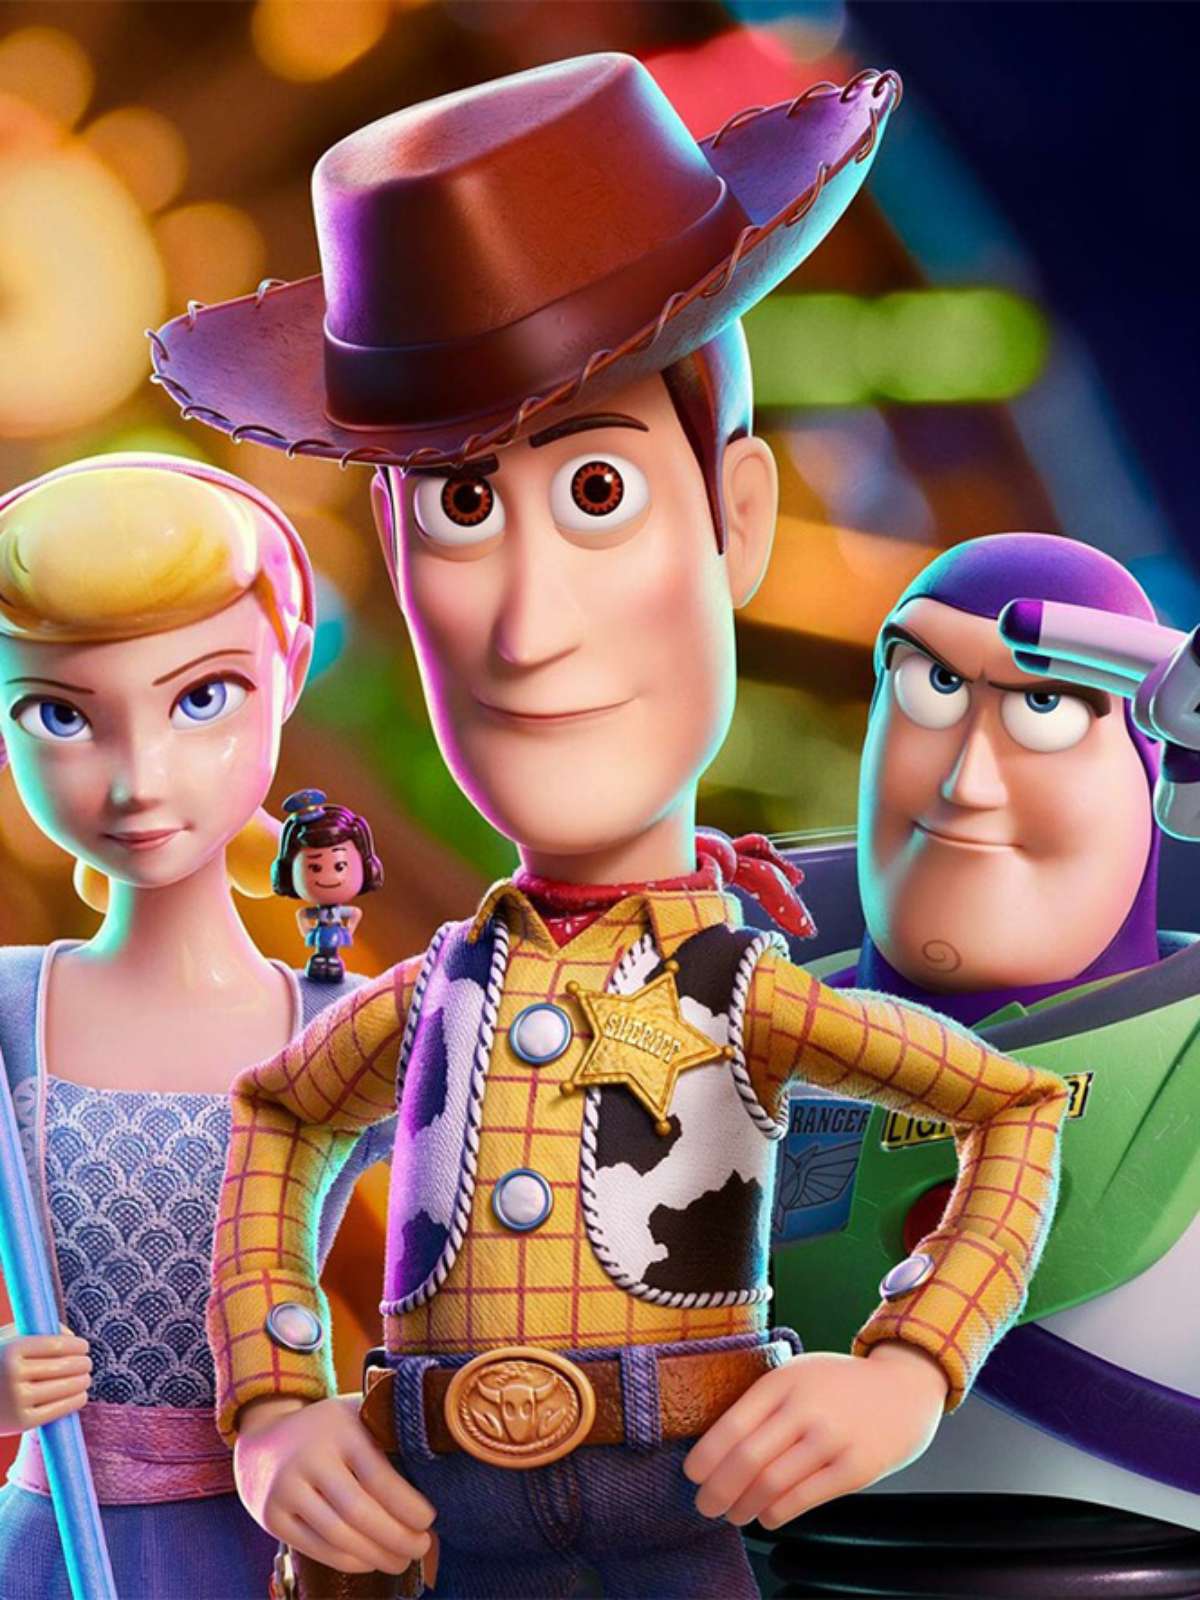 Toy Story, Frozen e Zootopia terão sequências, anuncia Disney